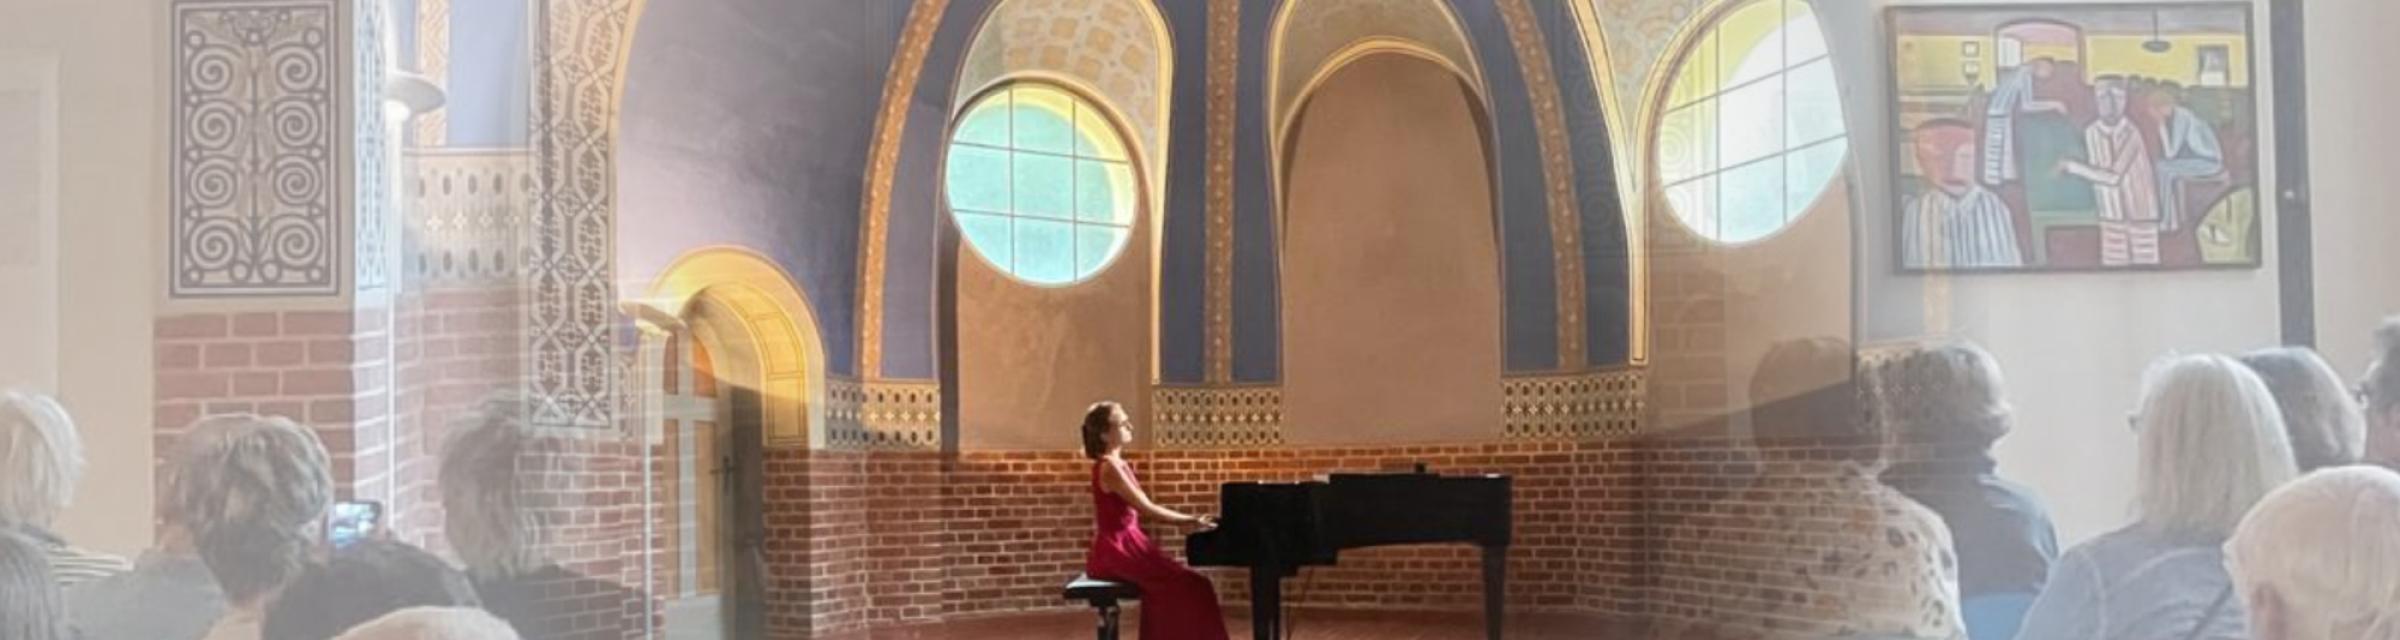 Janita Wiesbacher am Piano